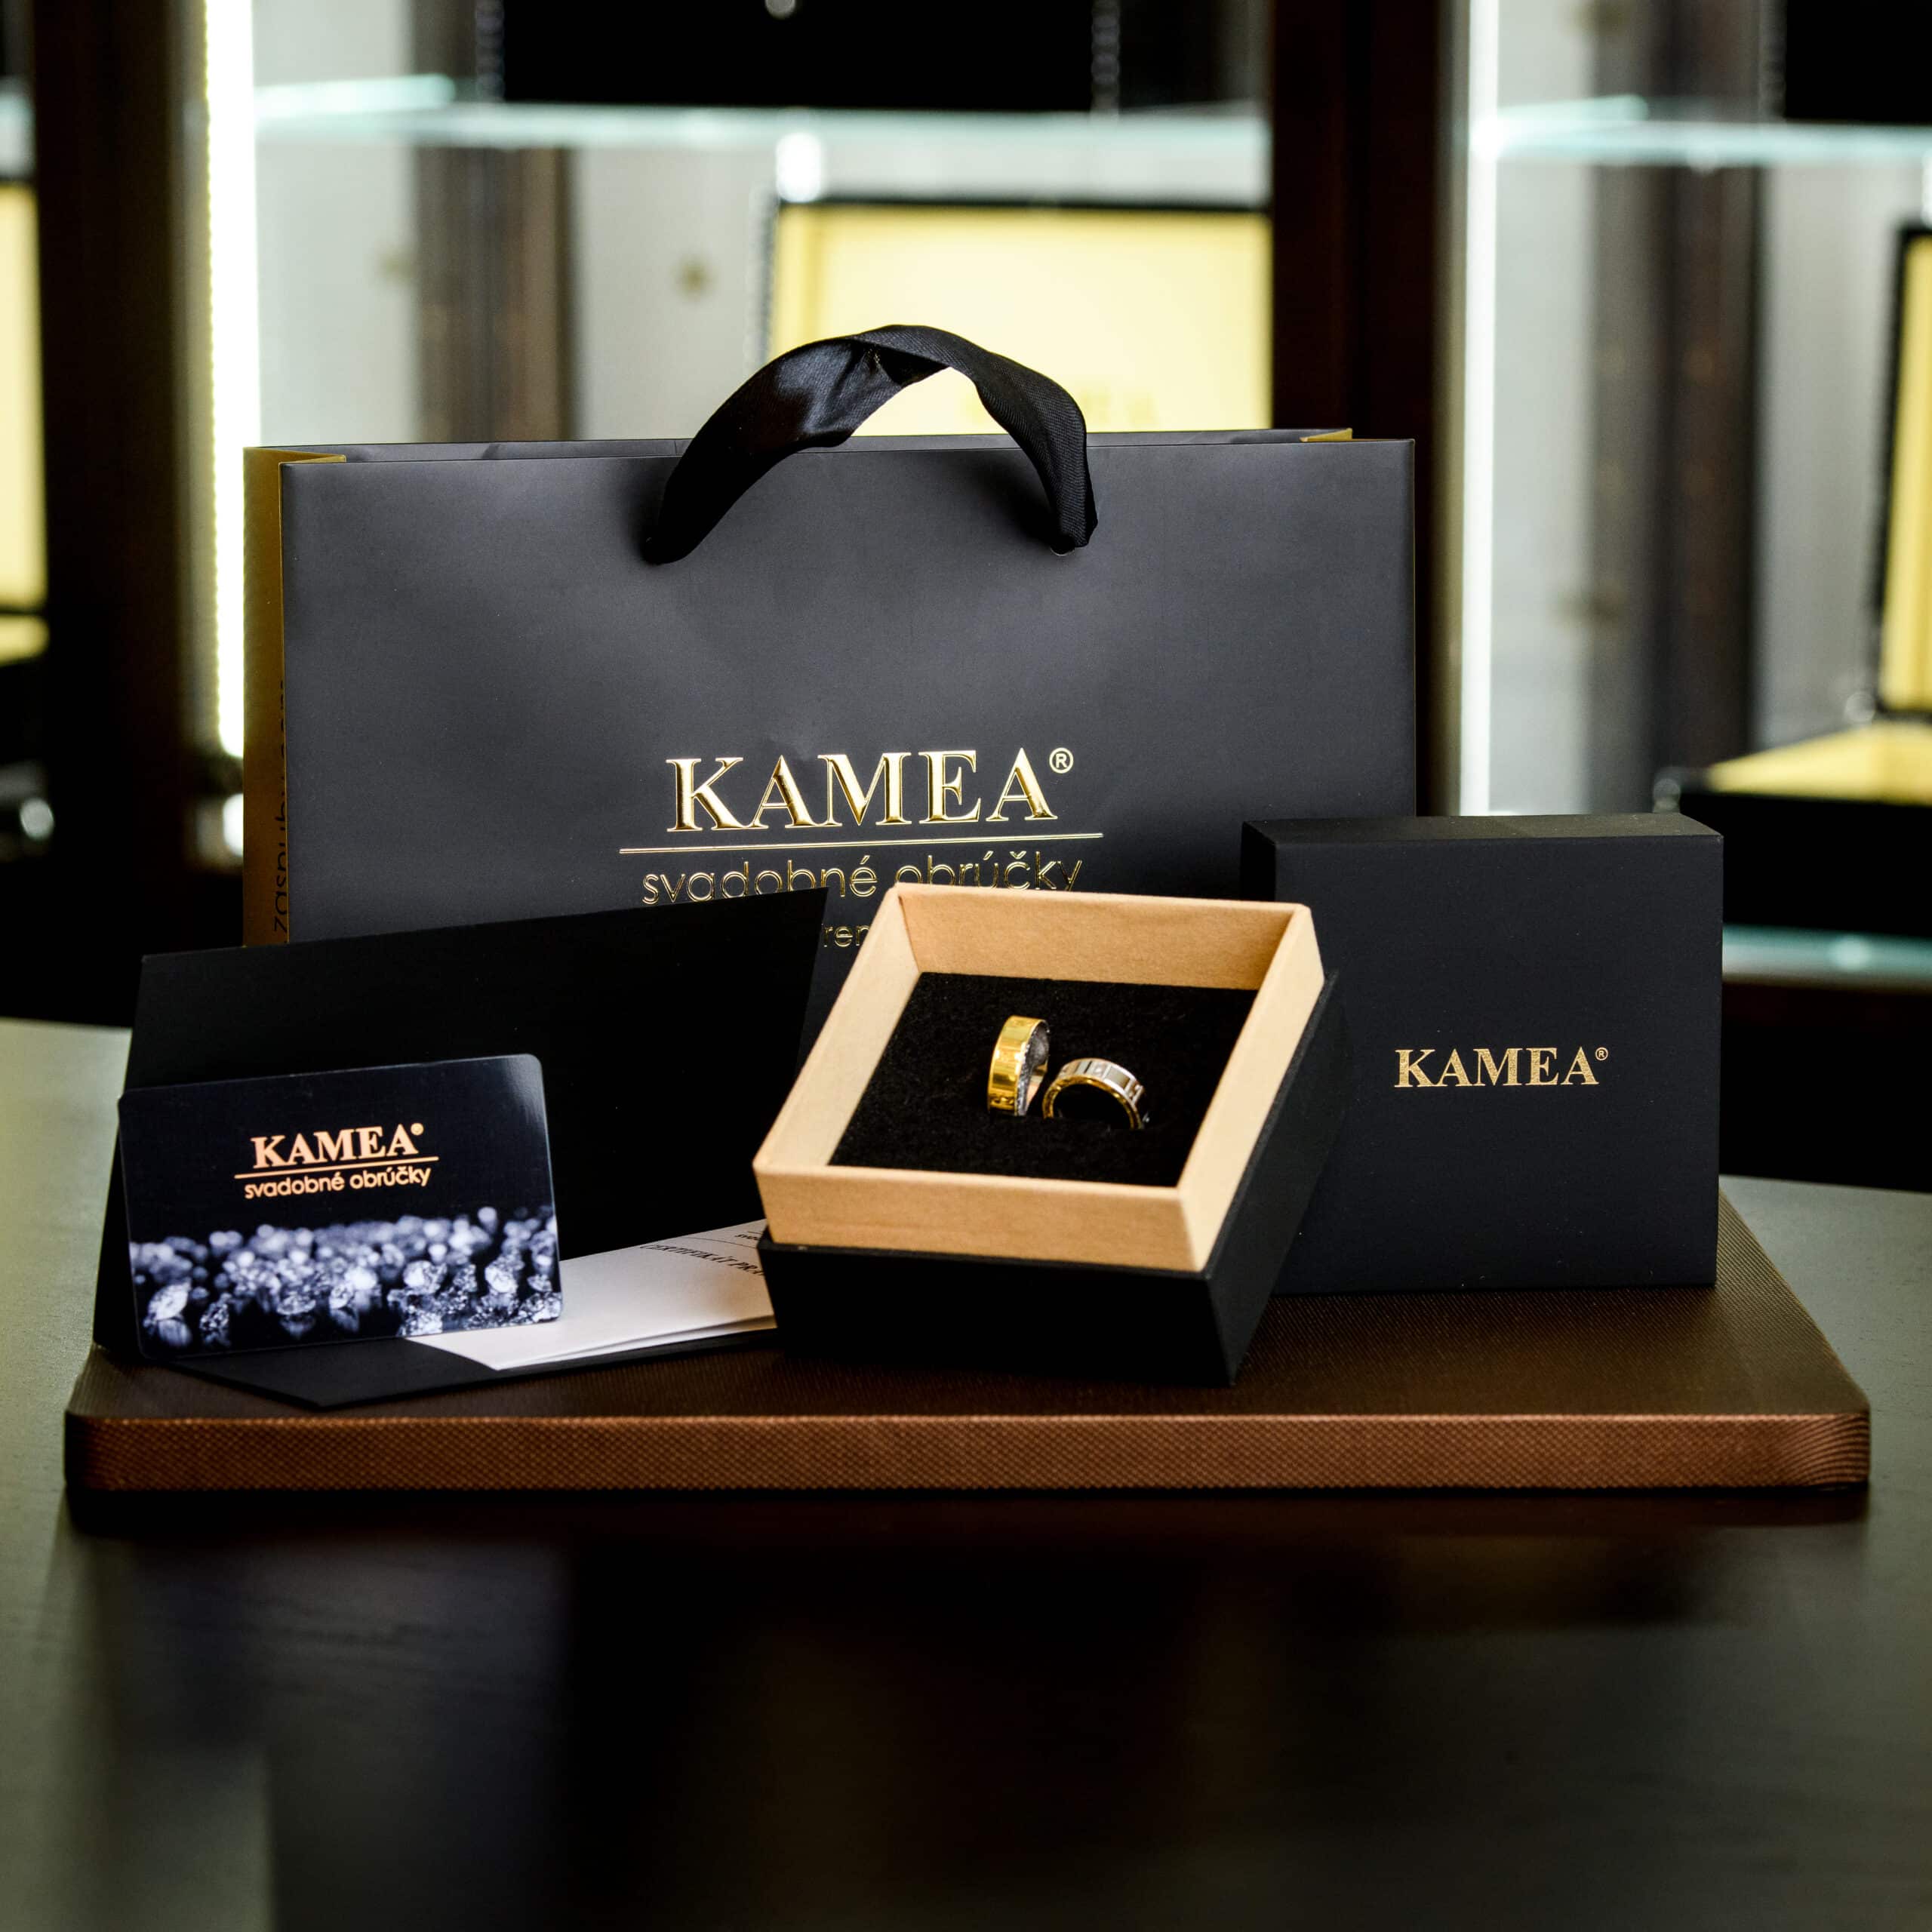 šperky Kamea Diamonds v krásnom balení